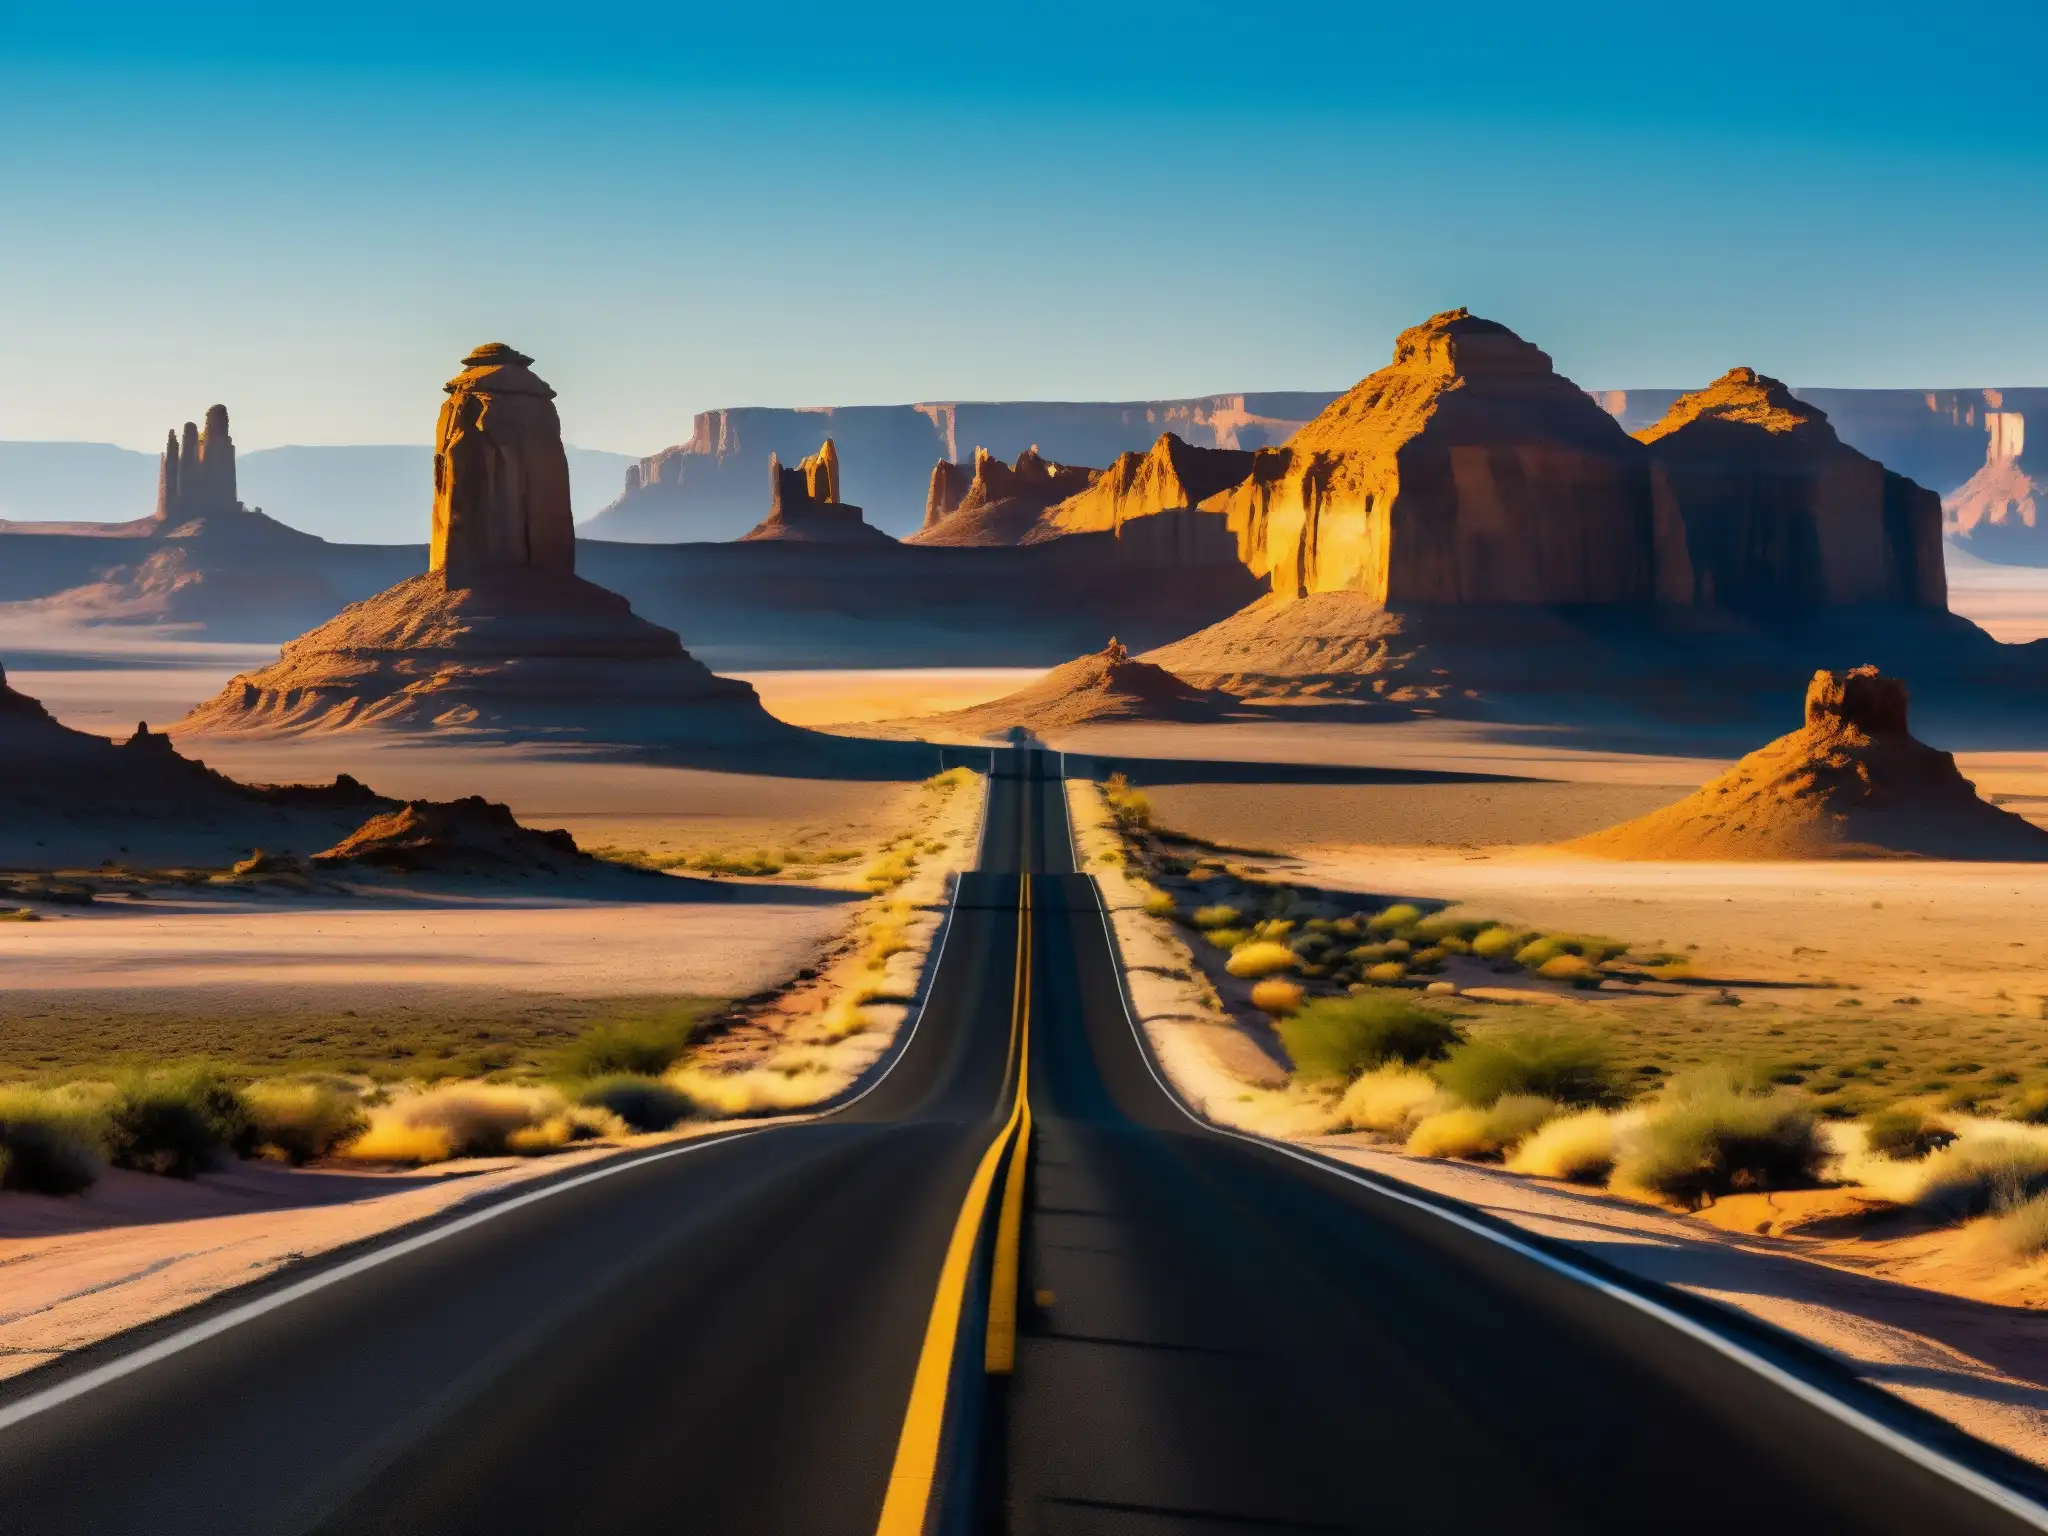 Un solitario viaje en carretera a través de un desierto rocoso, bajo el cálido sol del atardecer